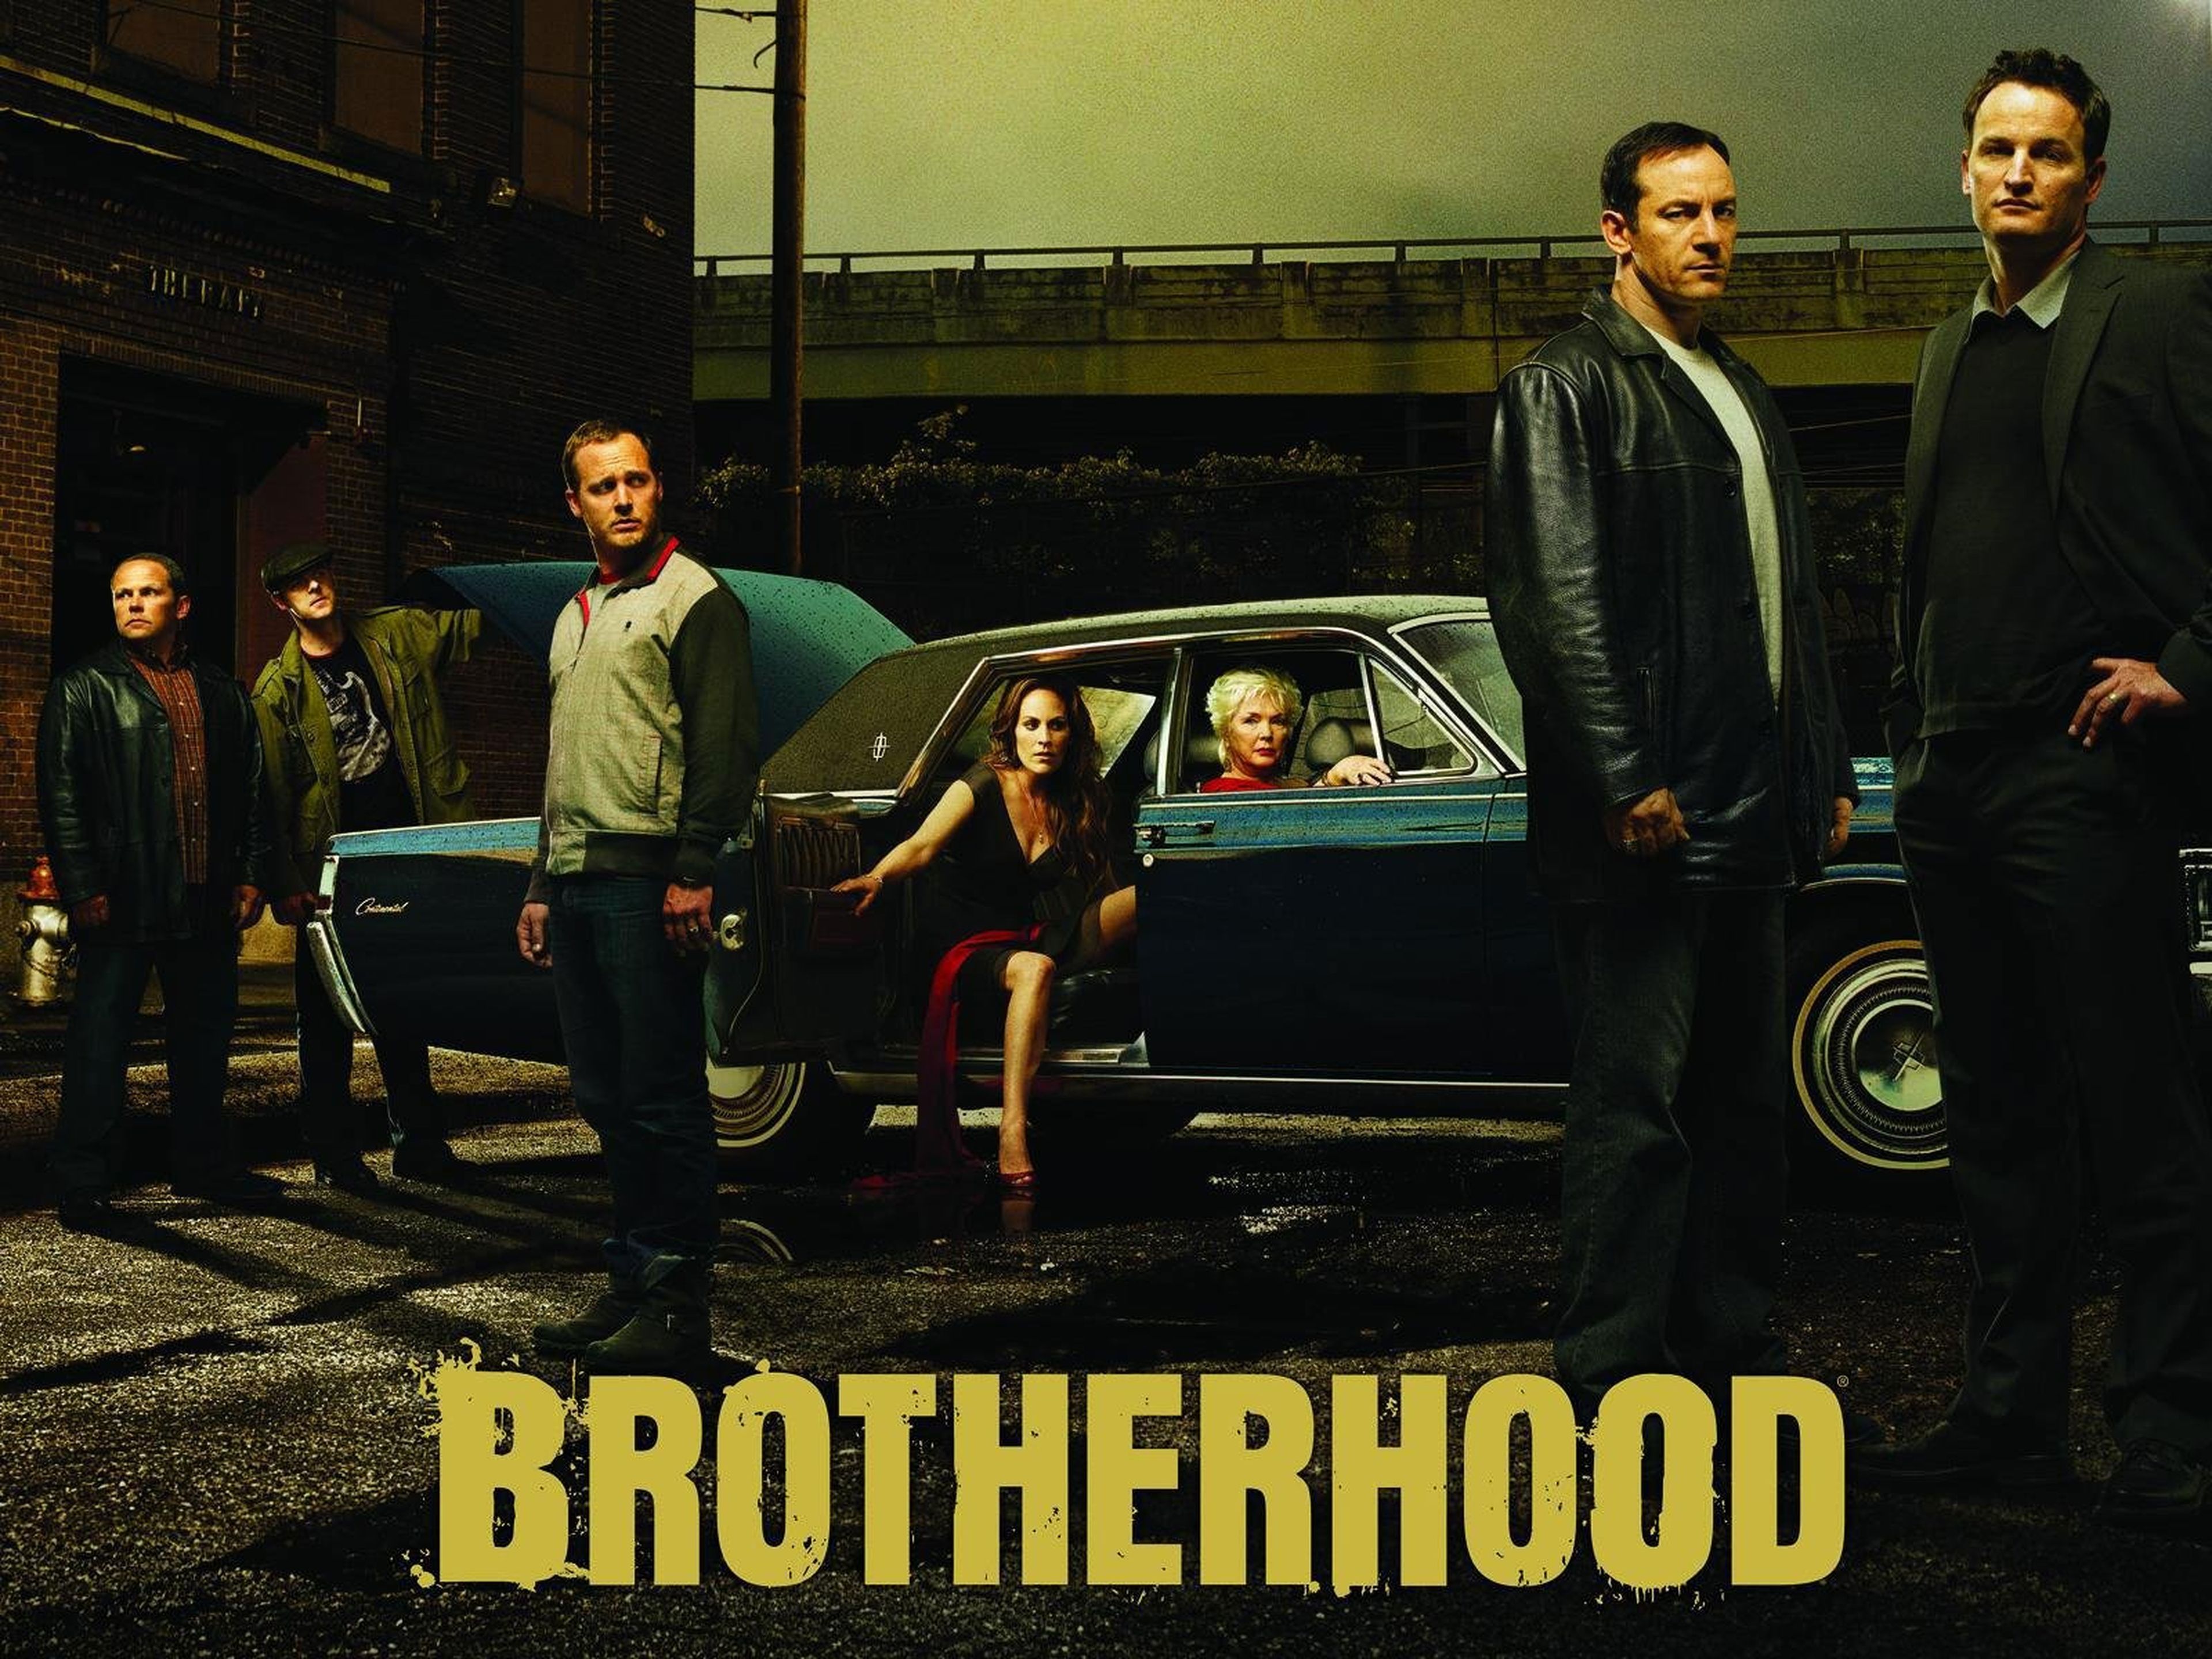 Brotherhood - Amazon Prime Video